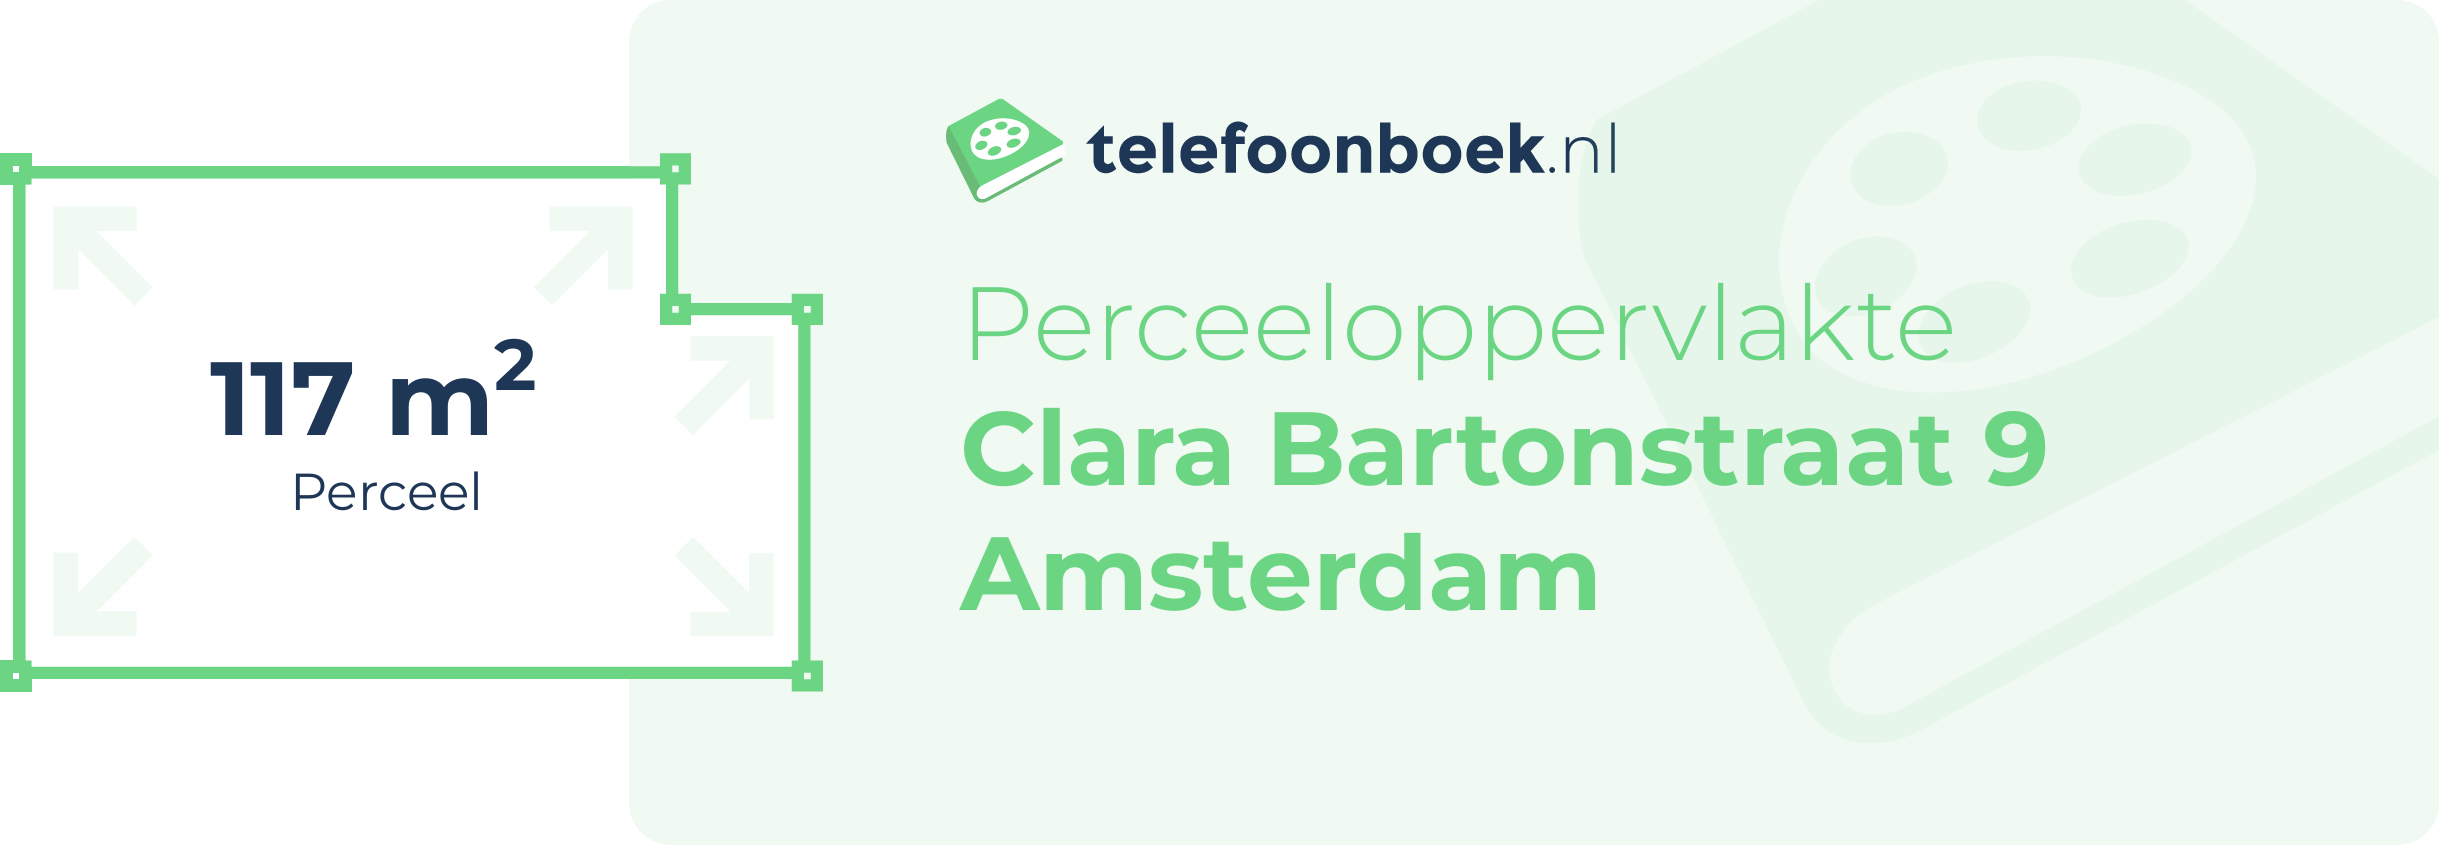 Perceeloppervlakte Clara Bartonstraat 9 Amsterdam